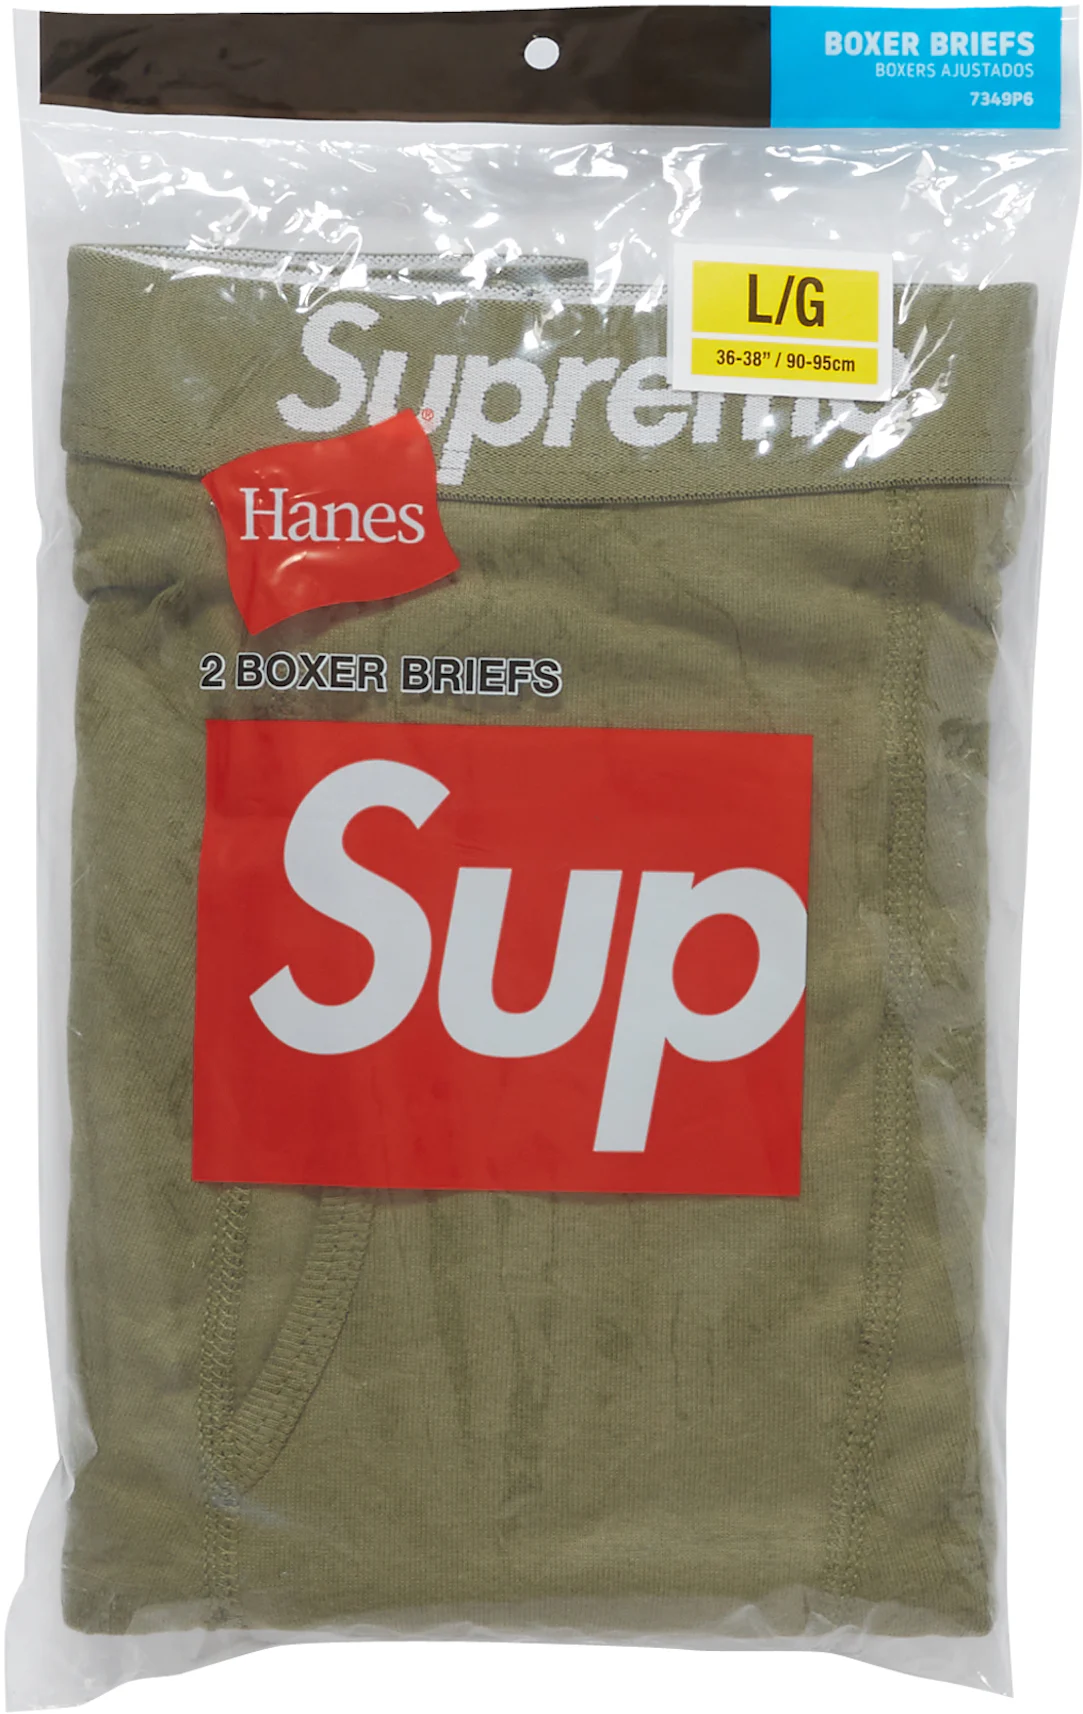 Supreme Hanes Boxer Briefs Black Underwear in Medium (4 in 1 Pack